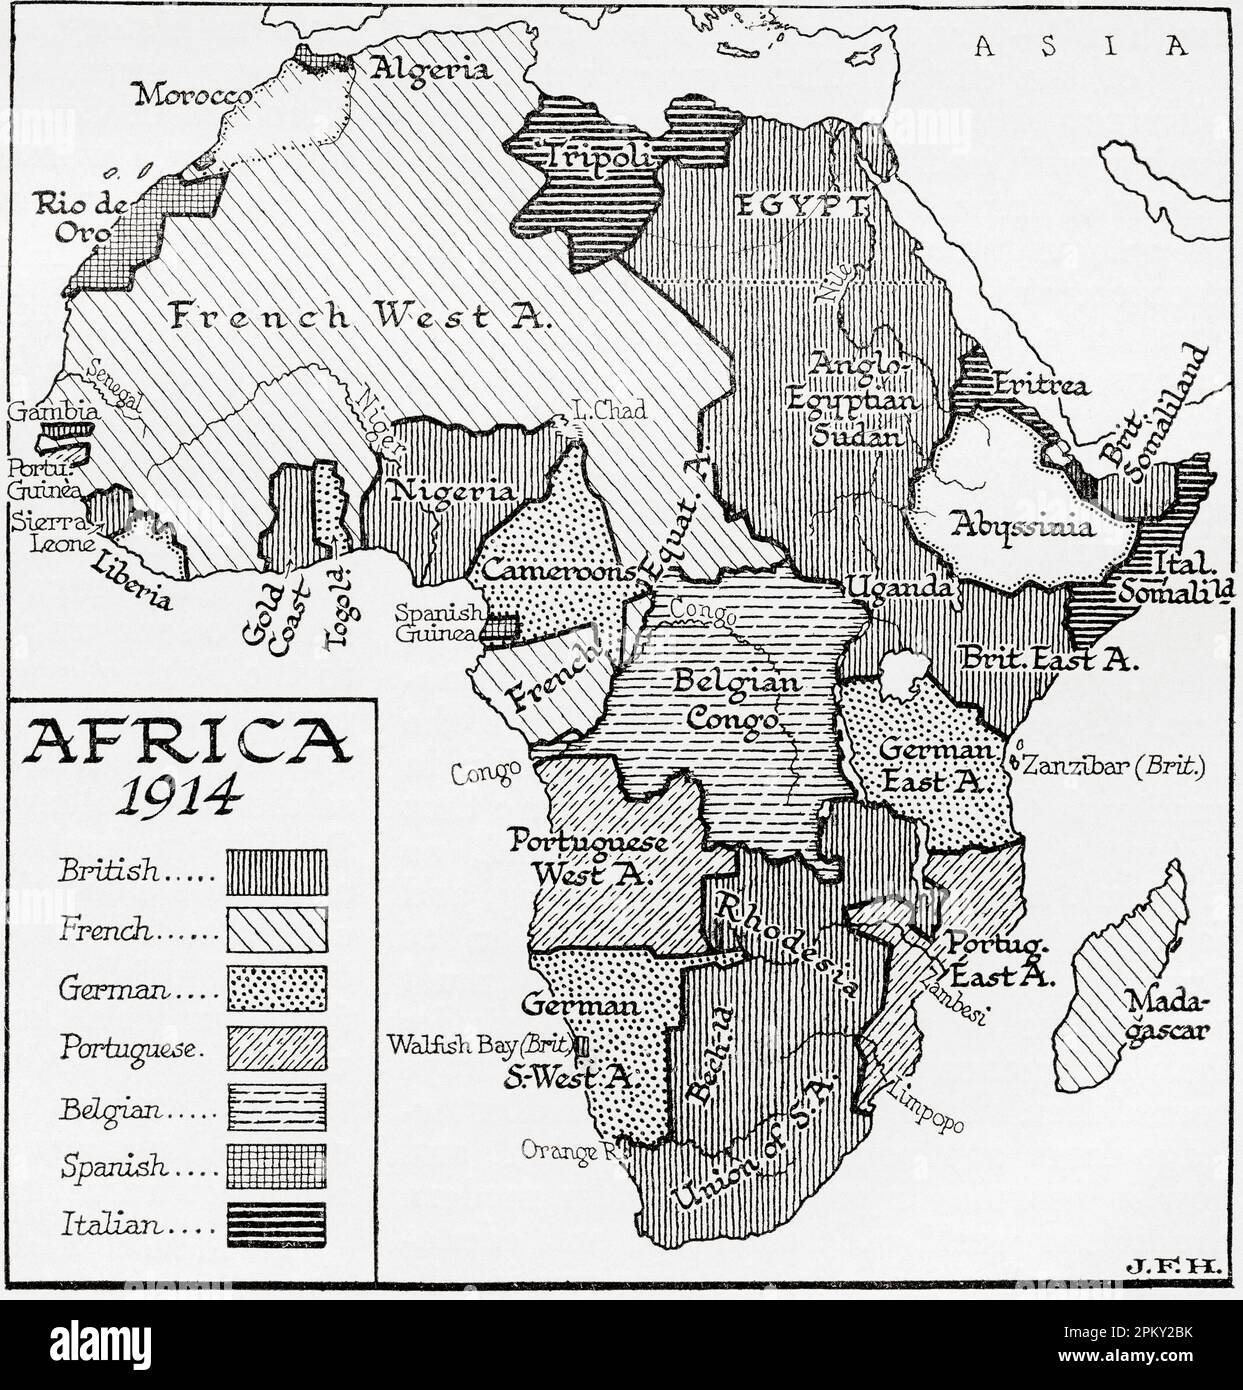 Mappa dell'Africa nel 1914. Dal libro Outline of History di H.G. Wells, pubblicato nel 1920. Foto Stock